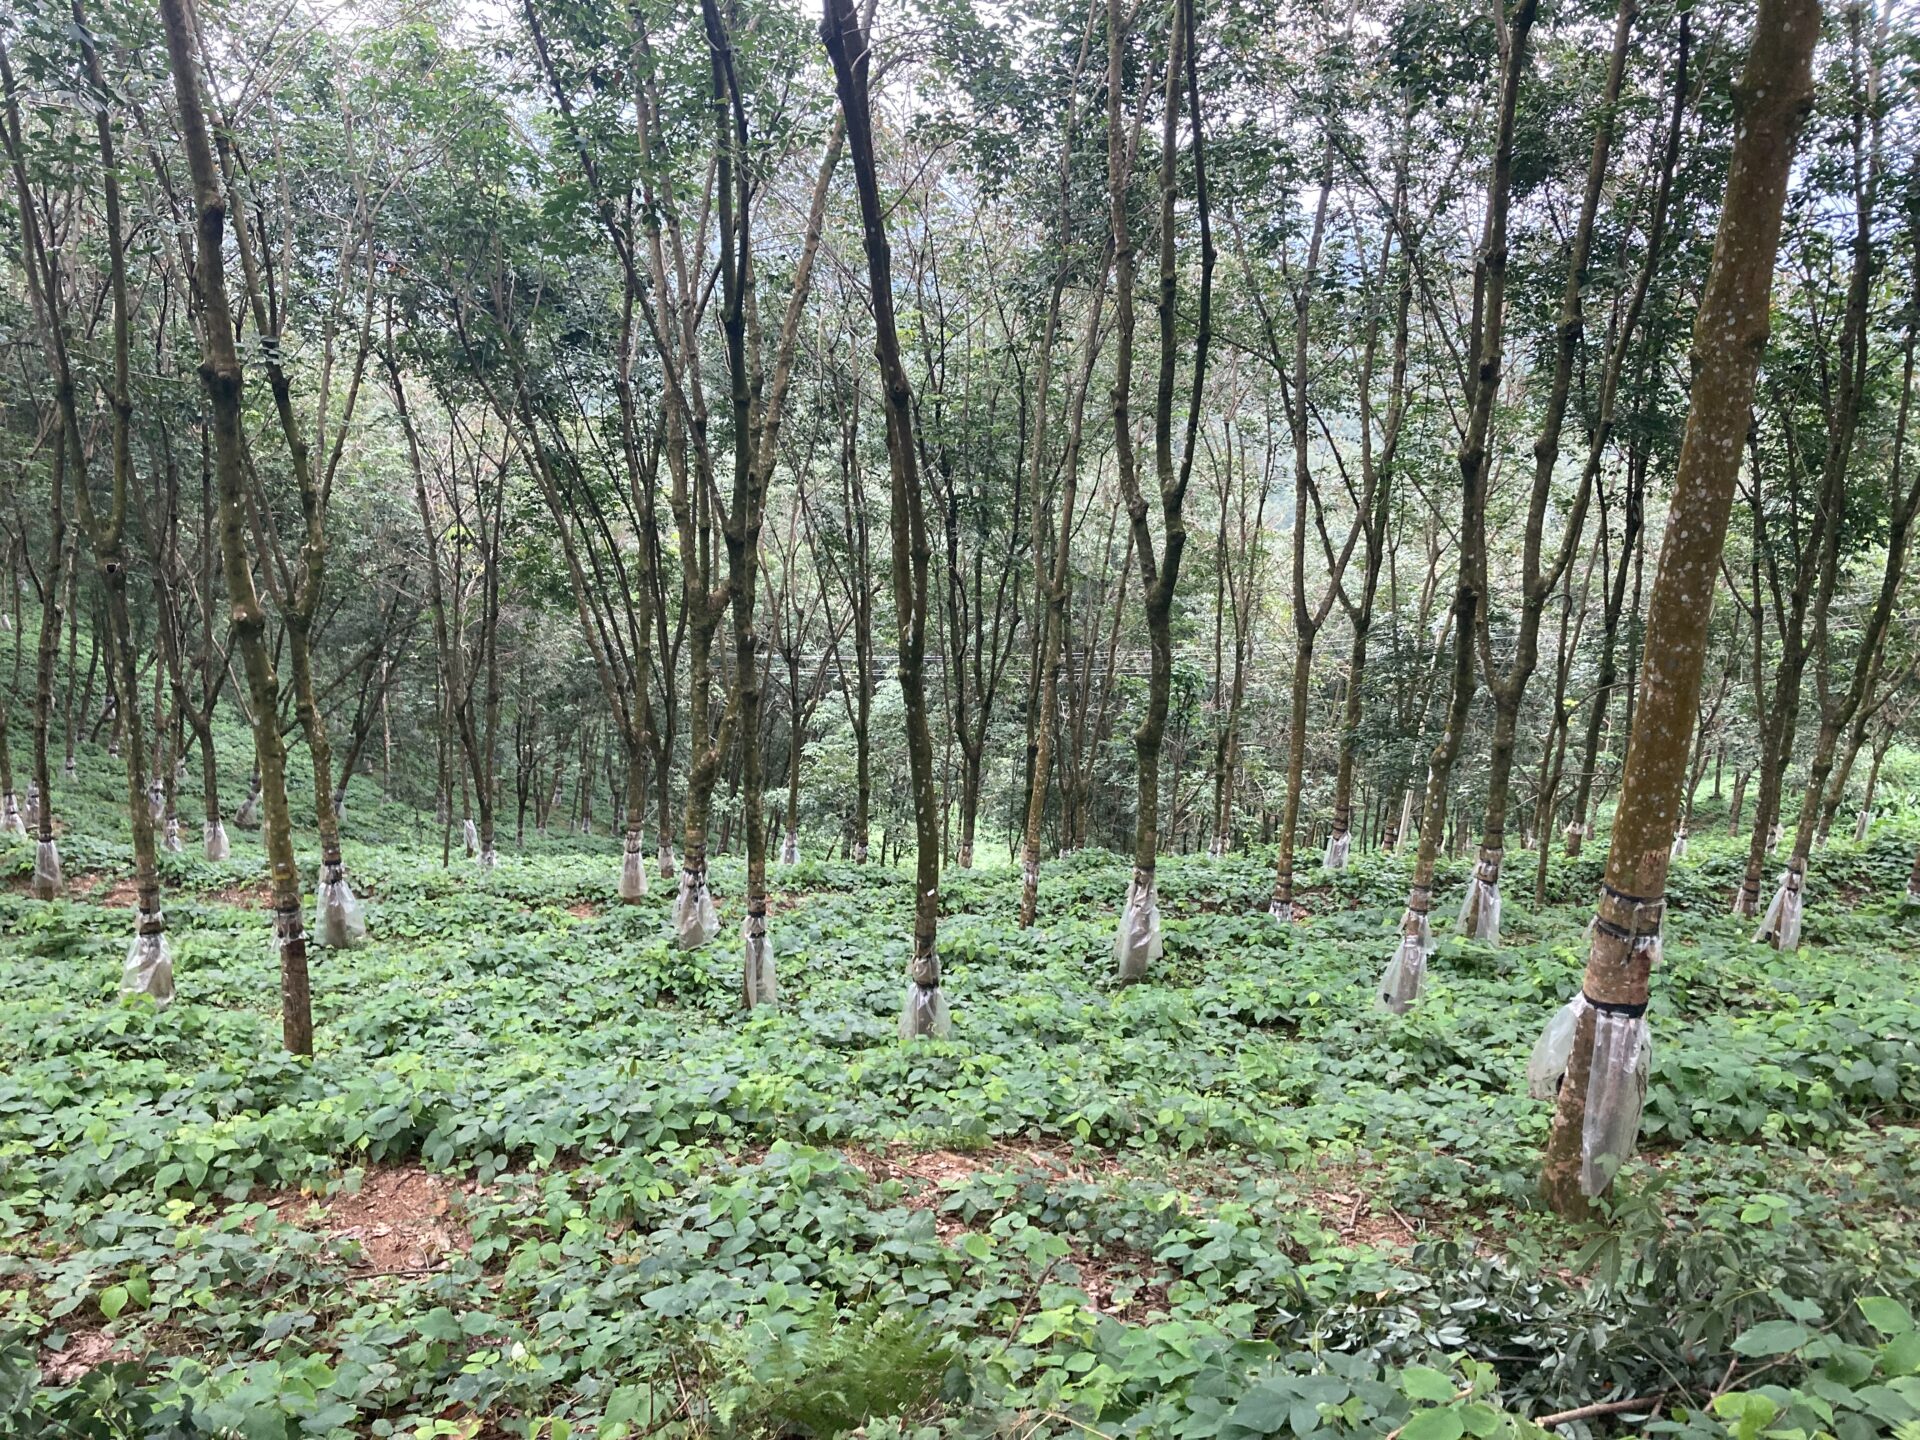 【出張報告】スリランカ天然ゴム農園を視察しました! (ペールクレープ)